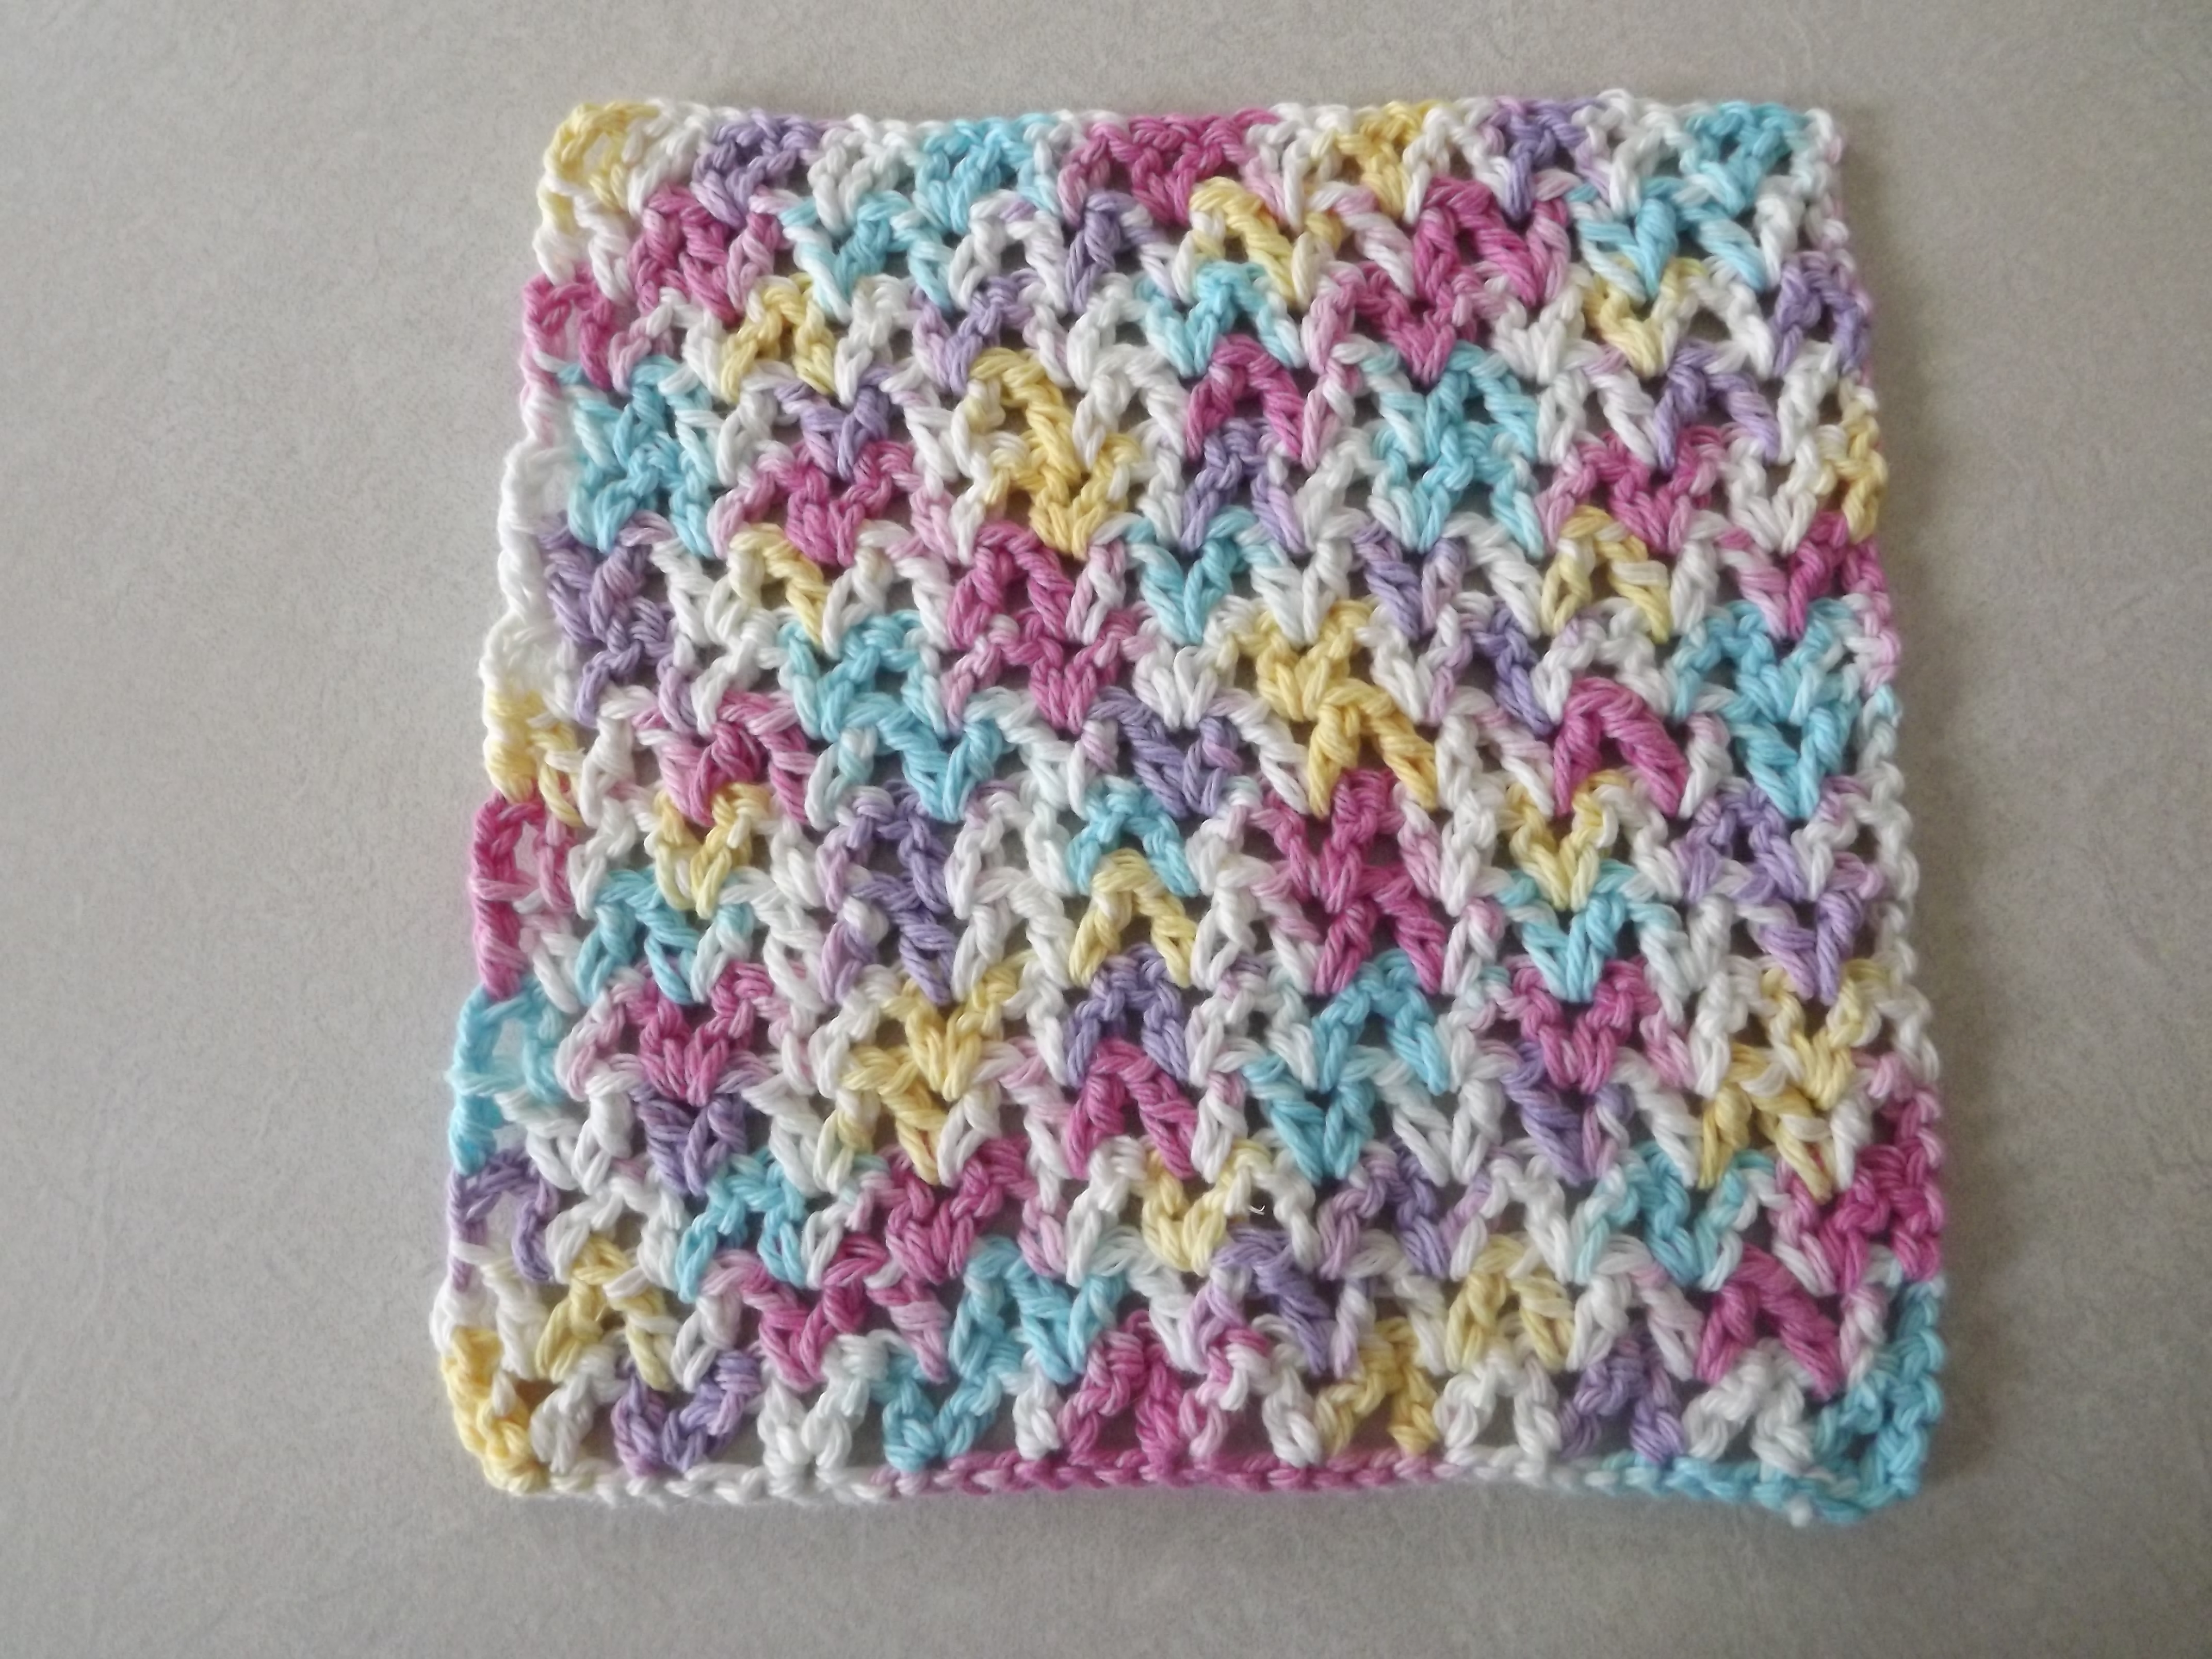 Free Crochet Patterns For Dishcloths Free V Stitch Dishcloth Pattern